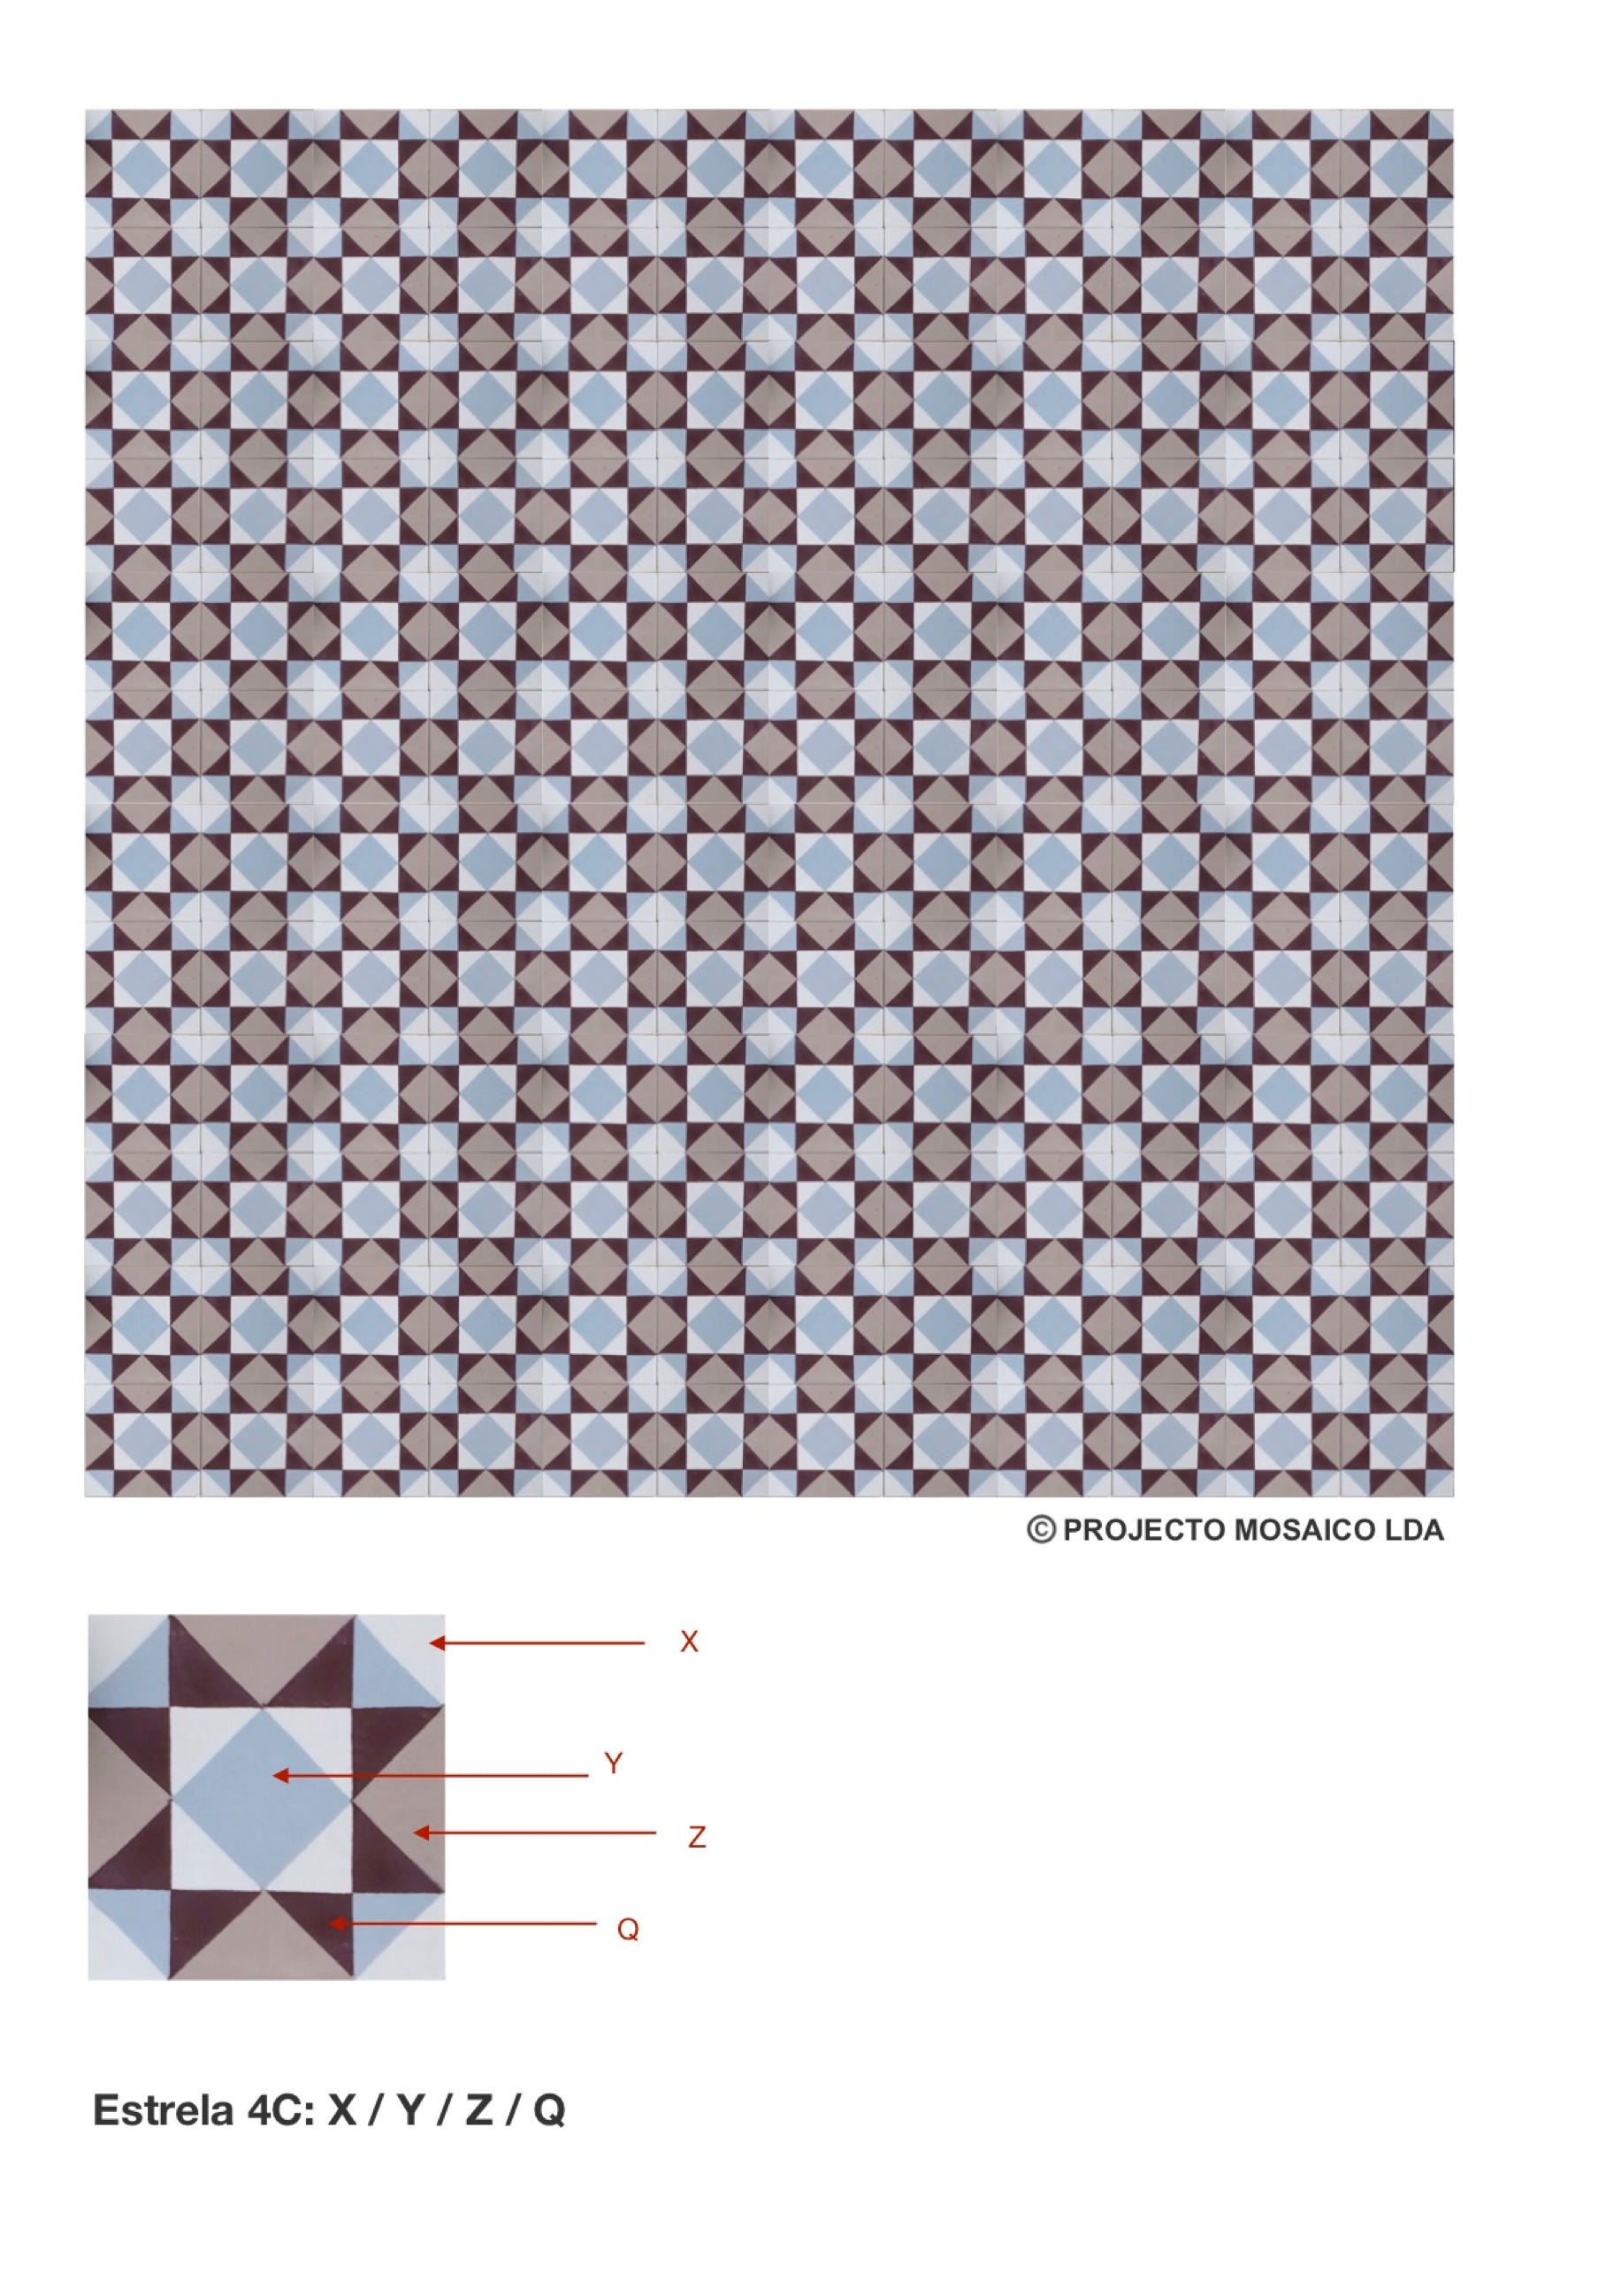 illustração de aplicação do mosaico hidráulico ref: Estrela 4C